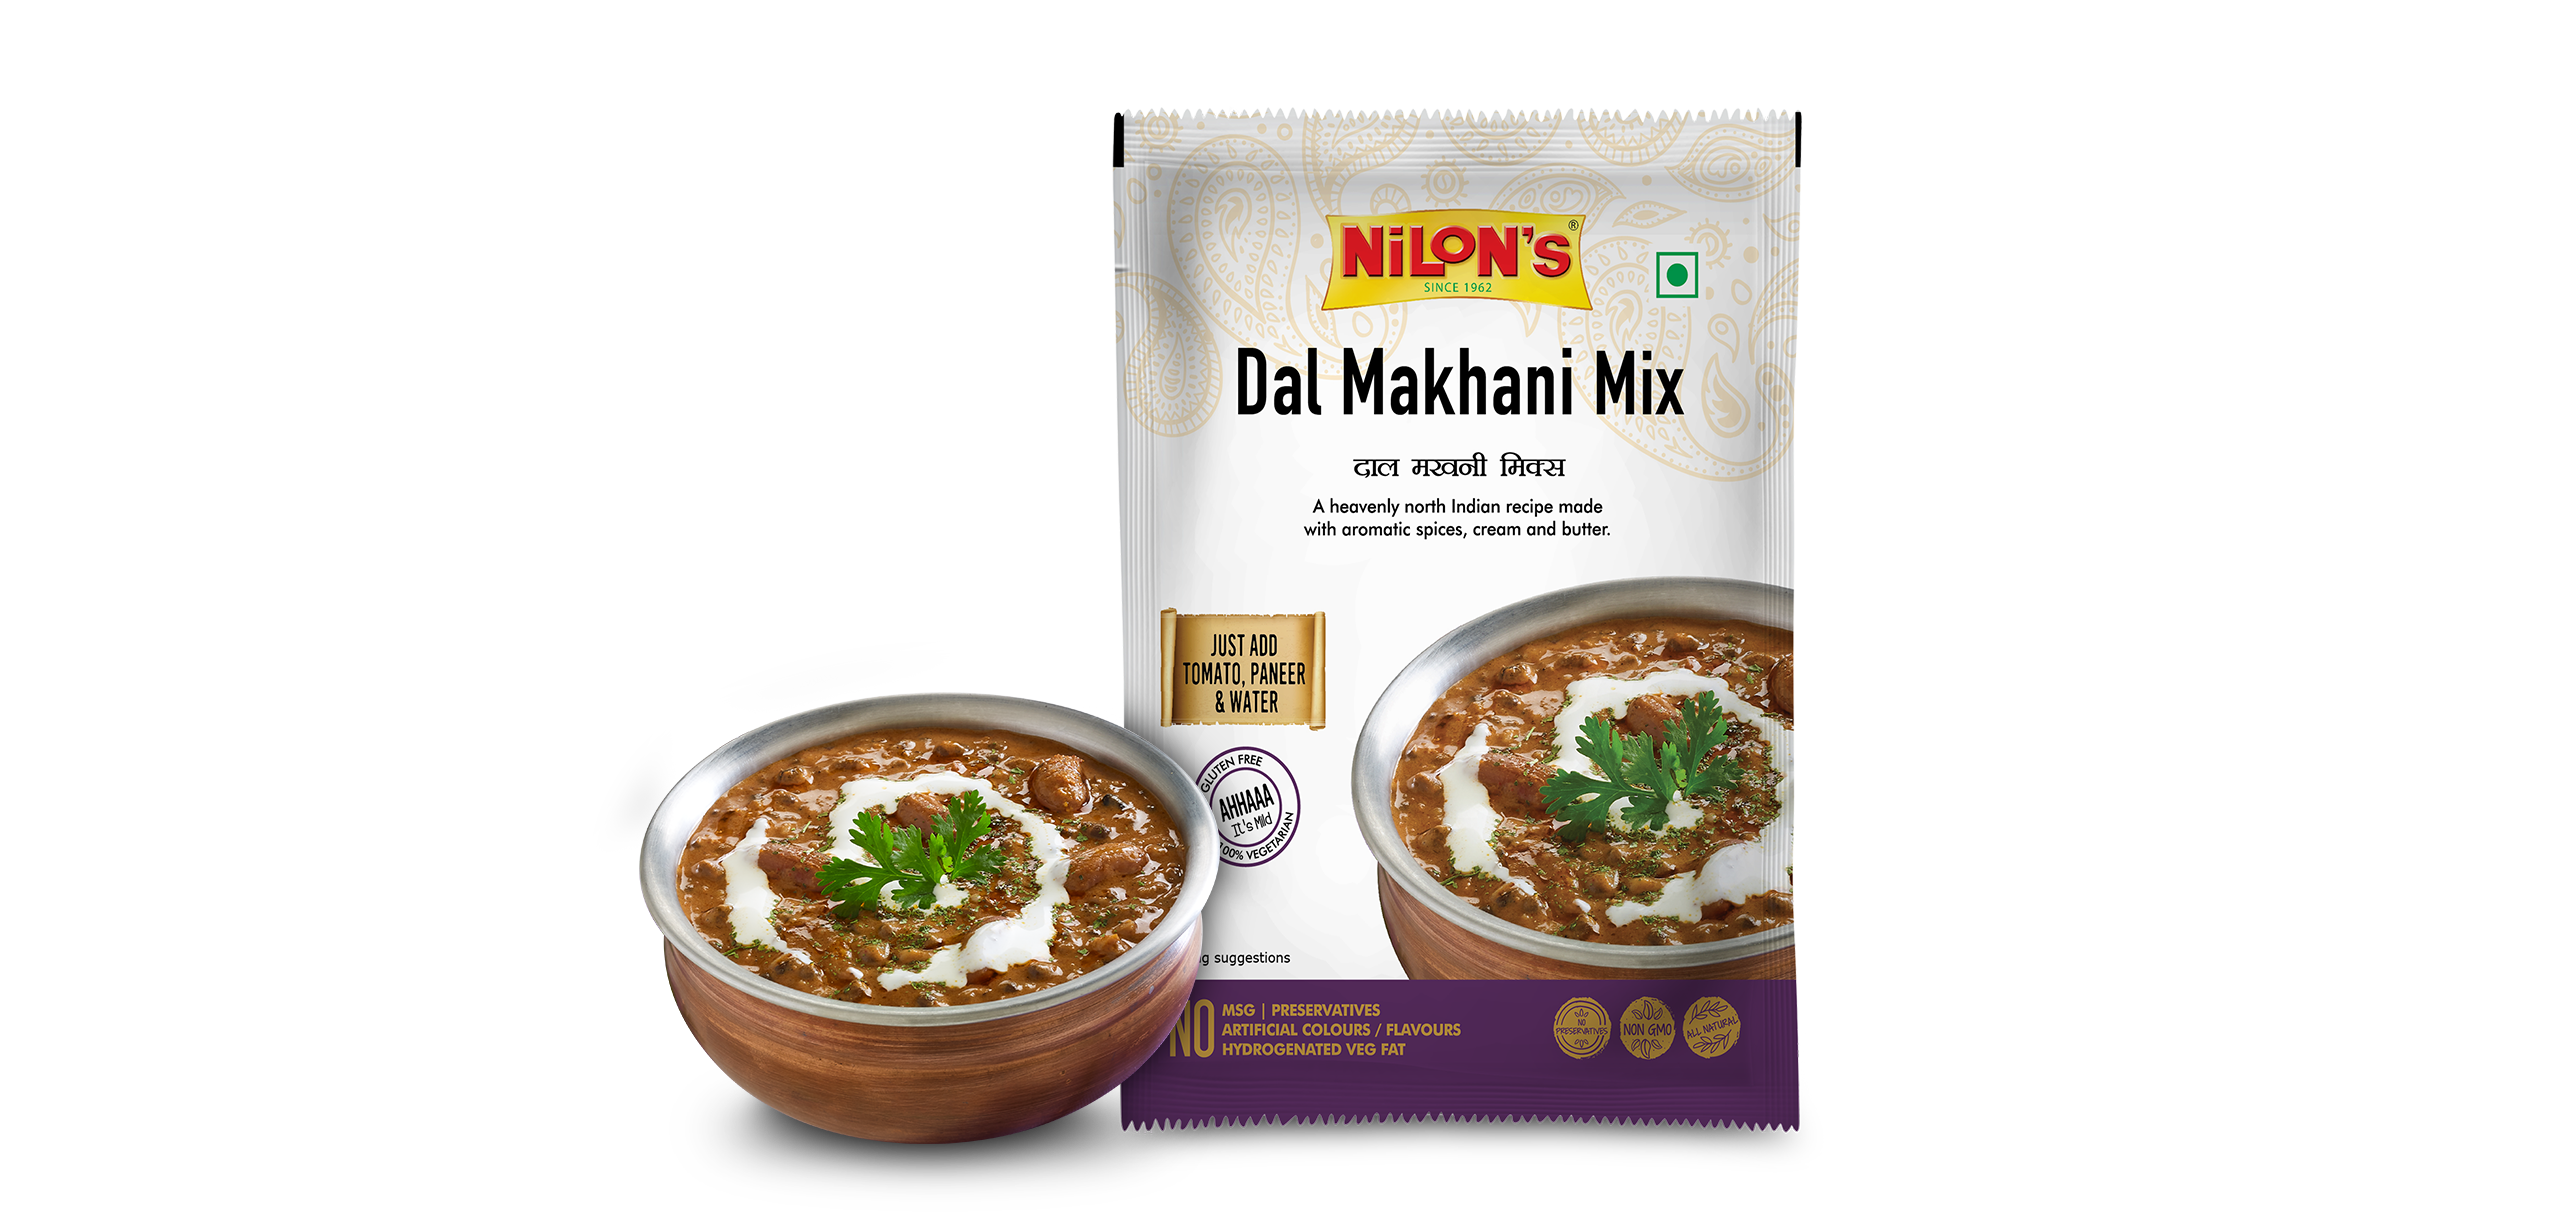 Dal Makhani Mix